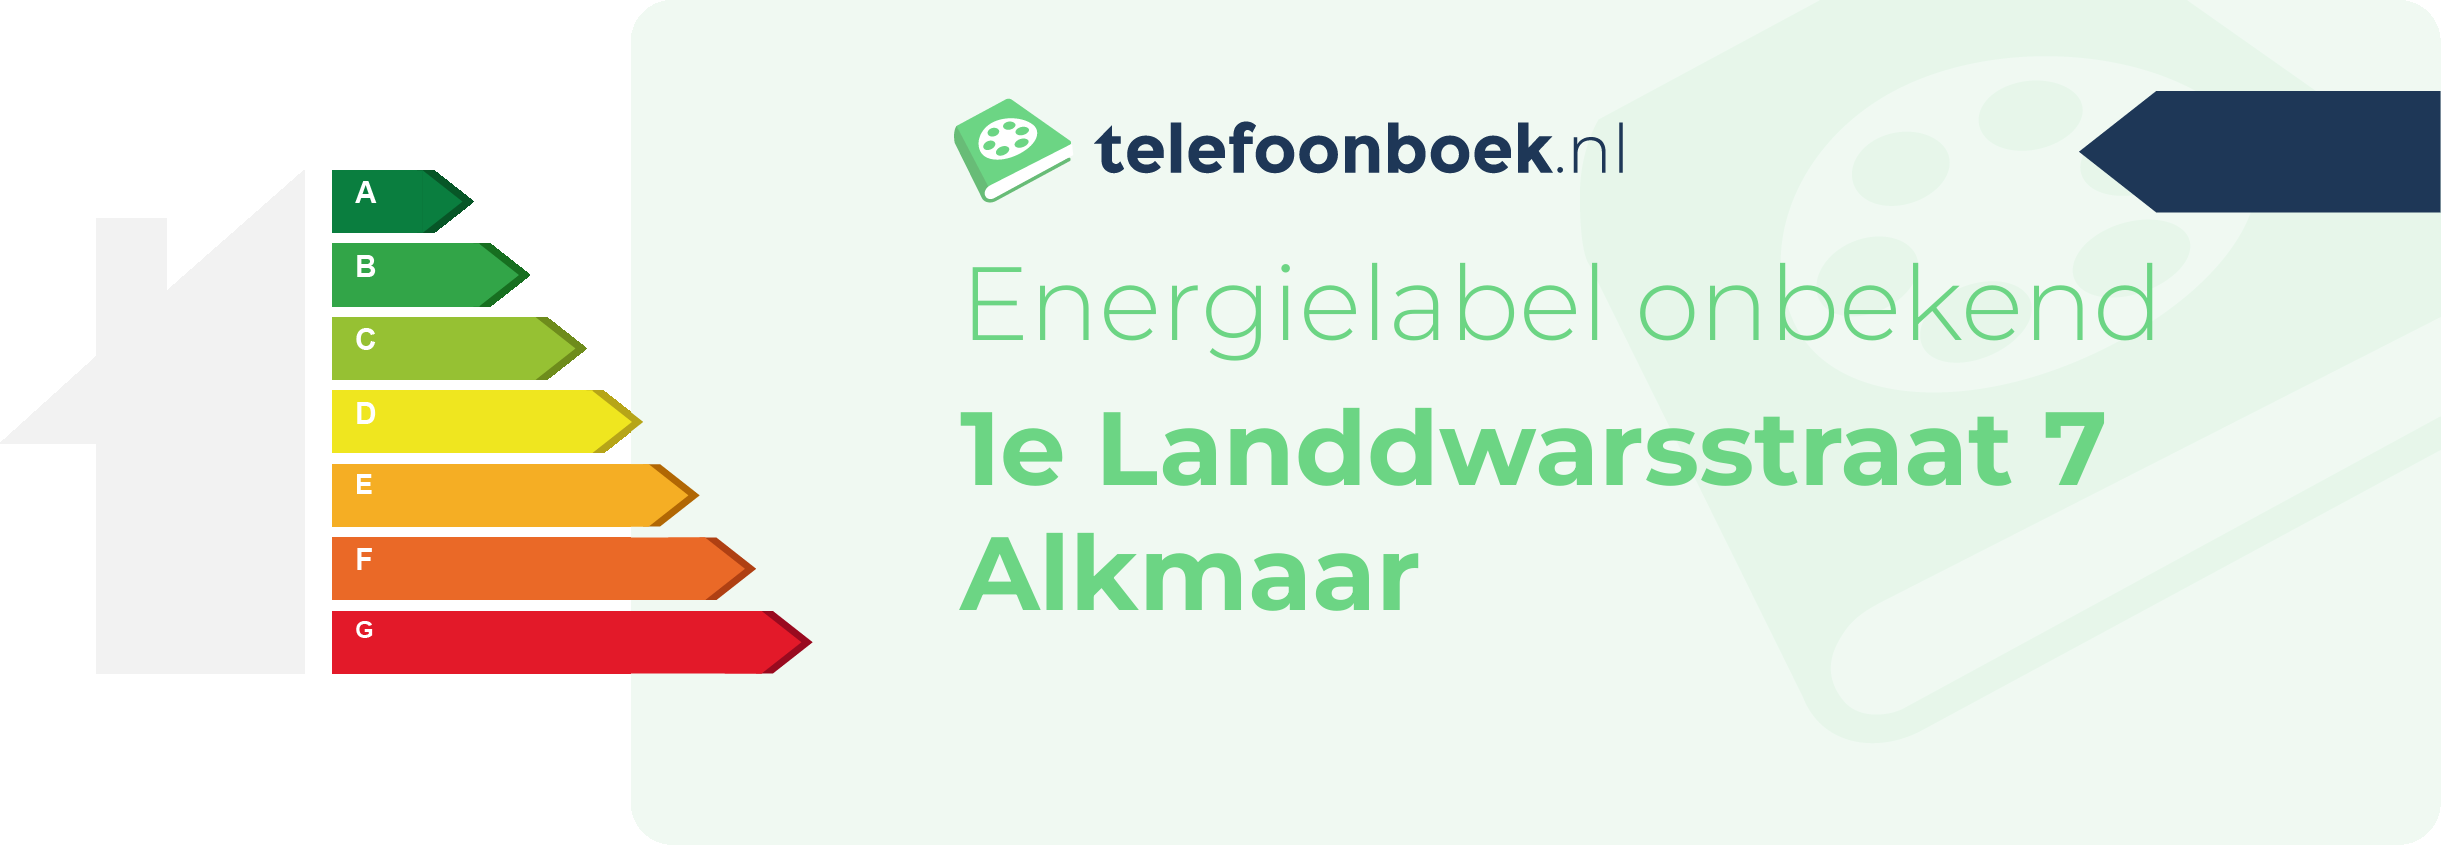 Energielabel 1e Landdwarsstraat 7 Alkmaar